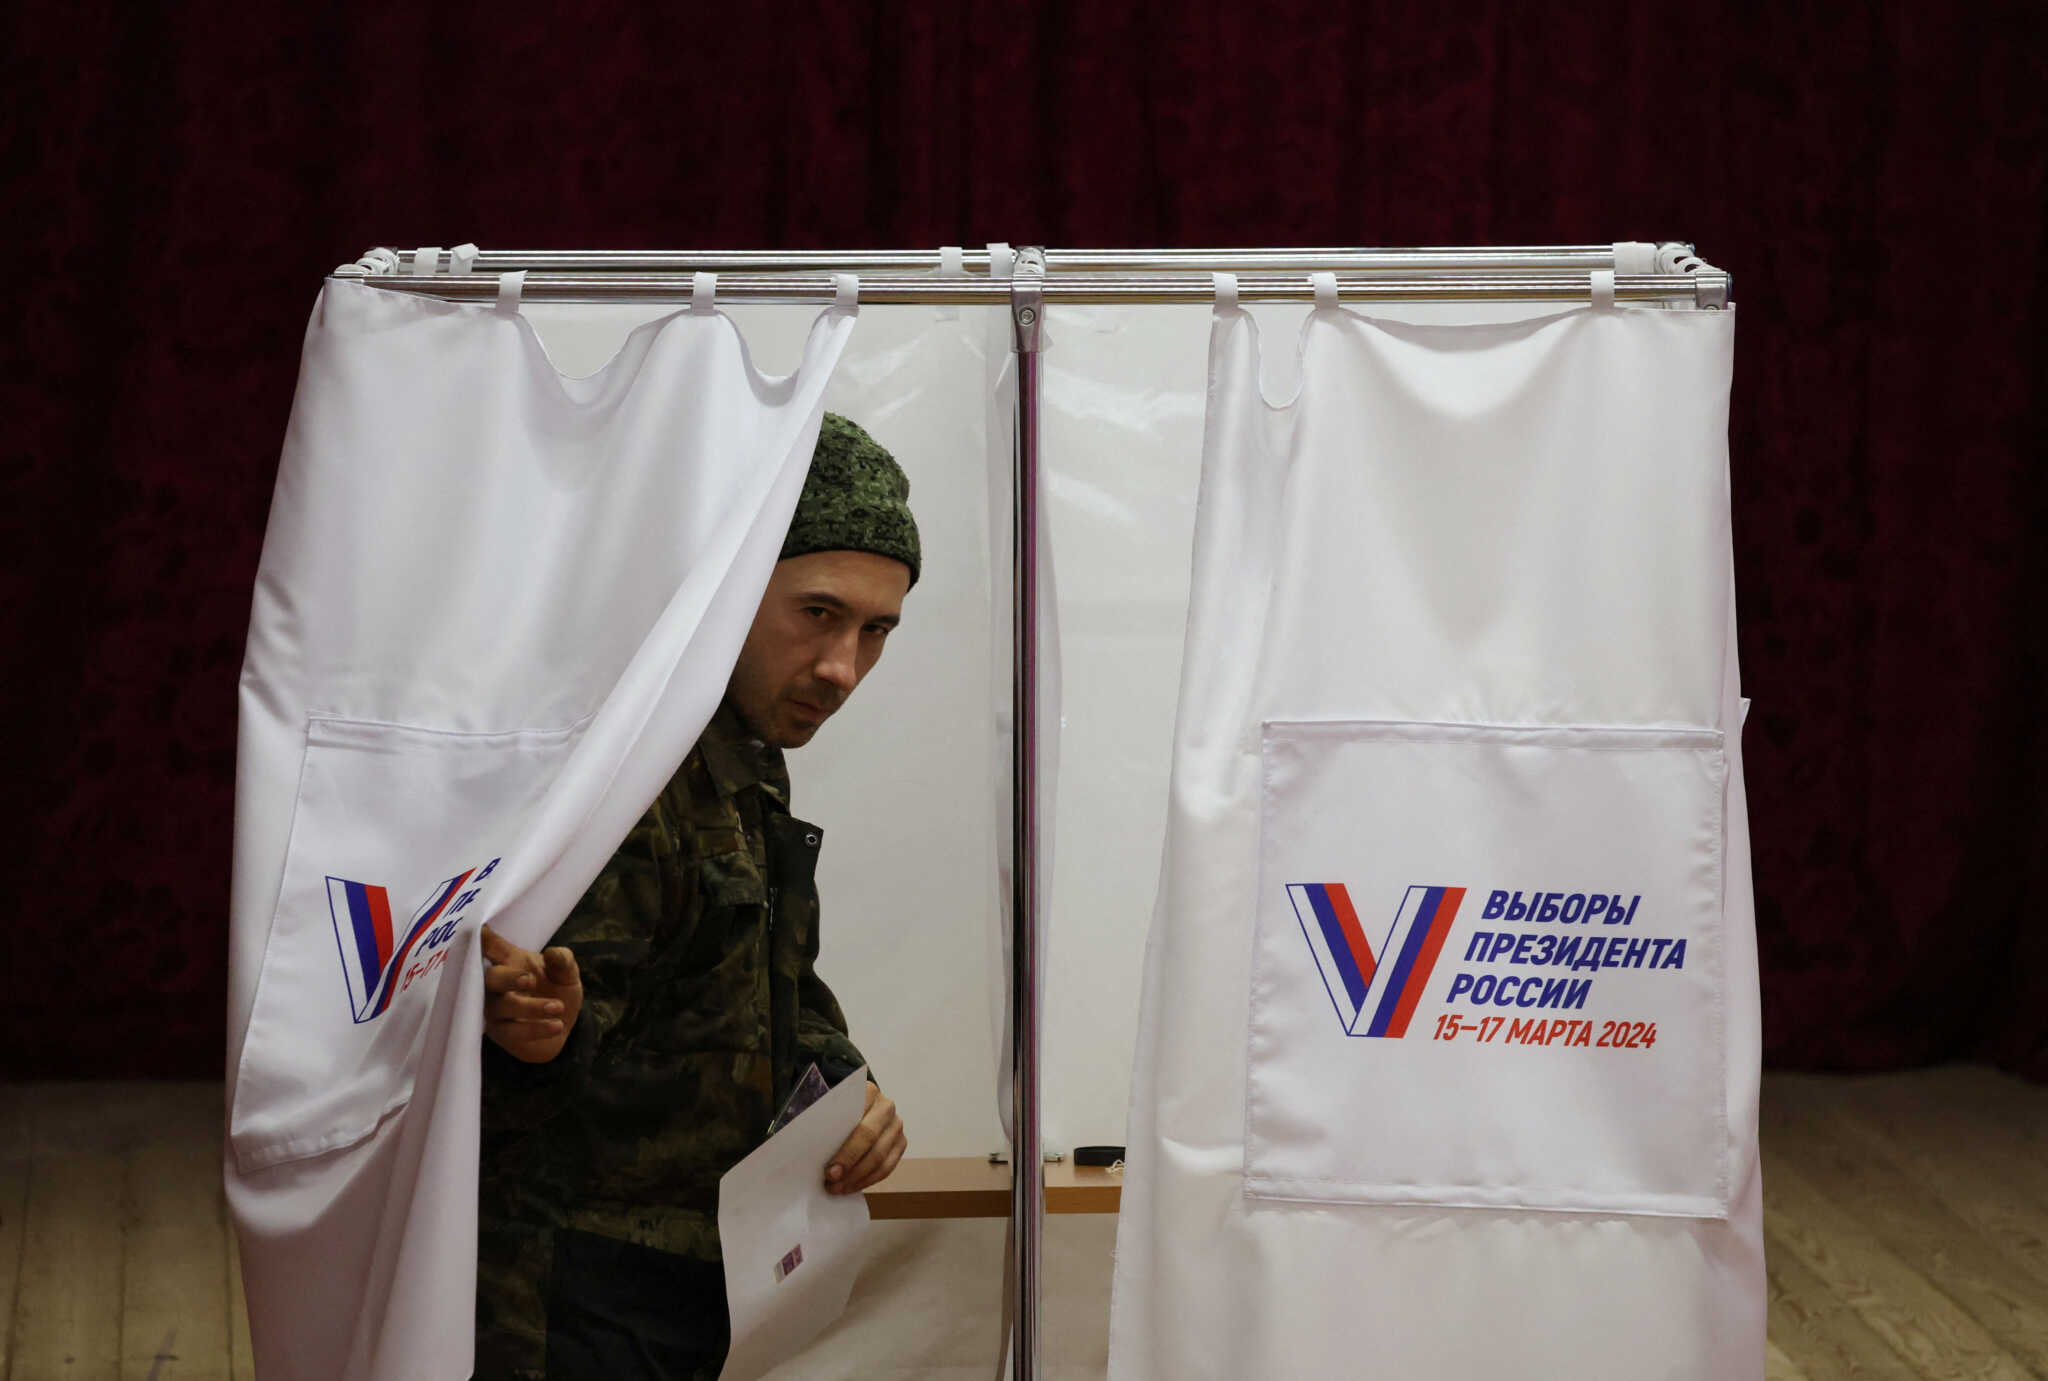 Ρωσία: Αυξήθηκε το ποσοστό συμμετοχής στις προεδρικές εκλογές σε σχέση με το 2018